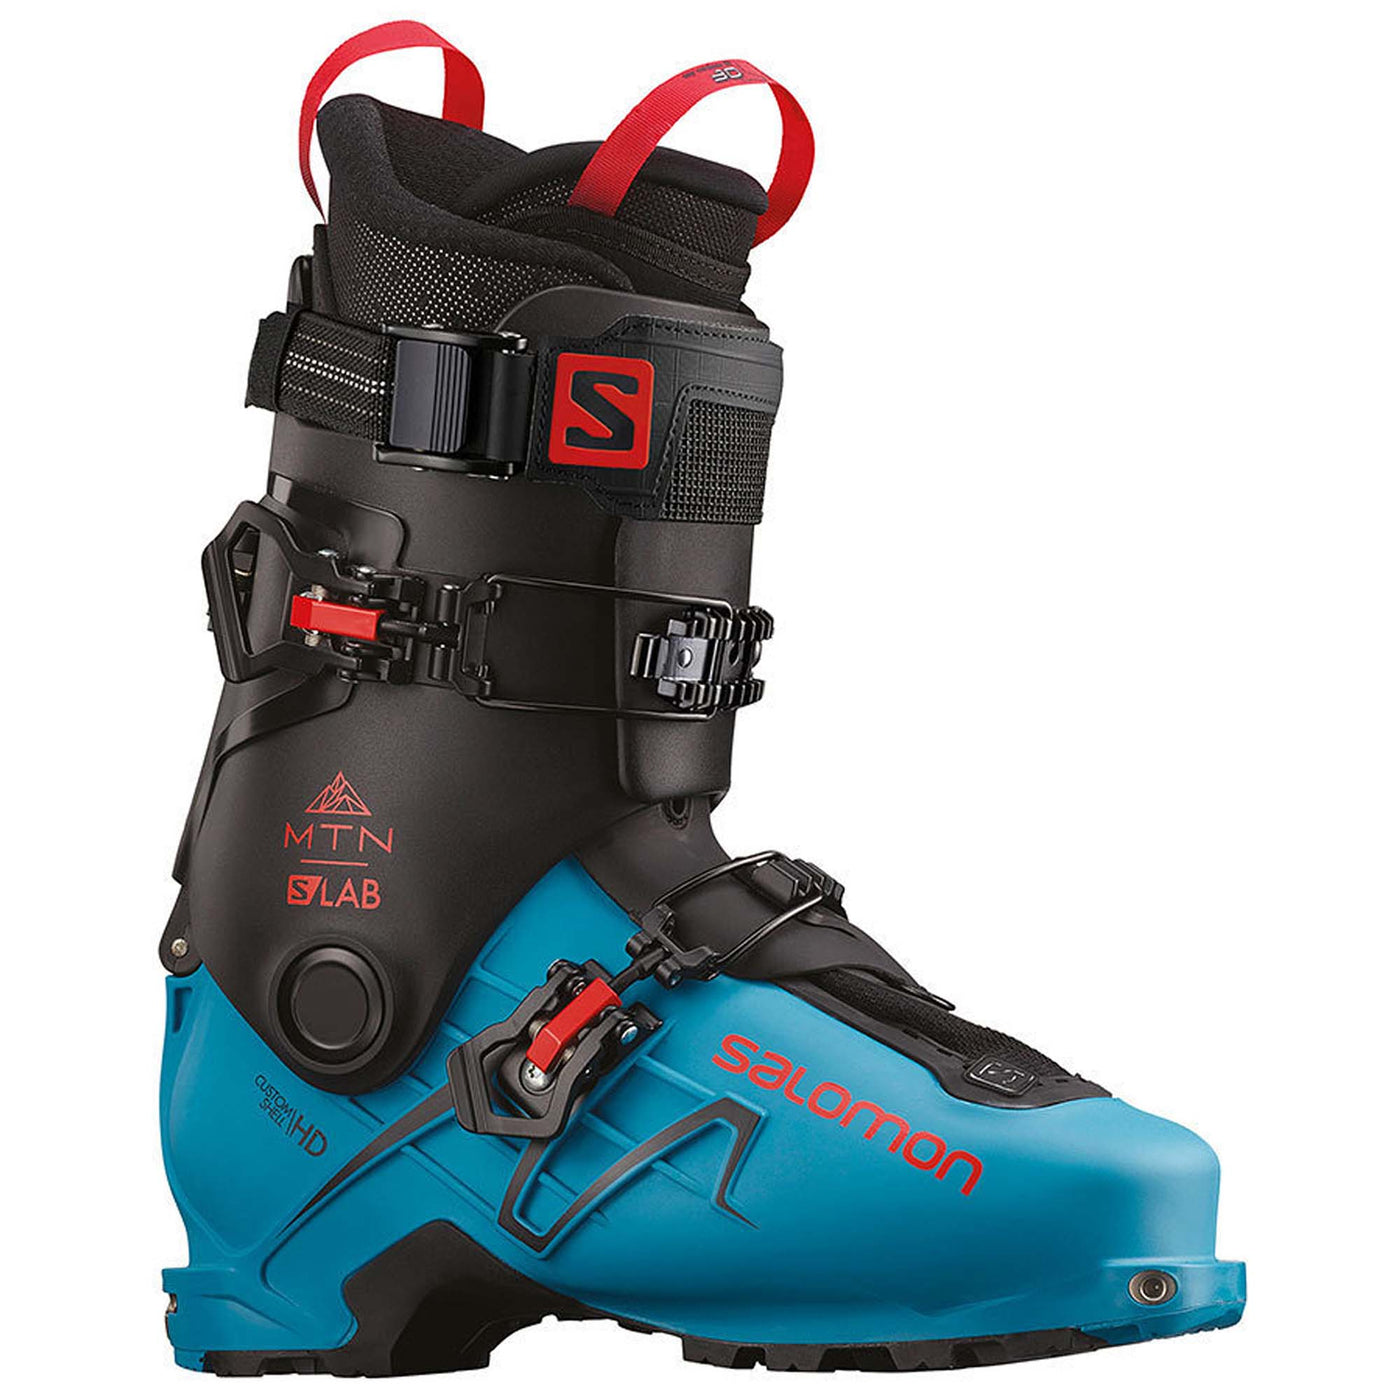 Salomon Men's S/Lab MTN Ski Boot 2021 BLACK/ TRANSCEND BLUE/ RED